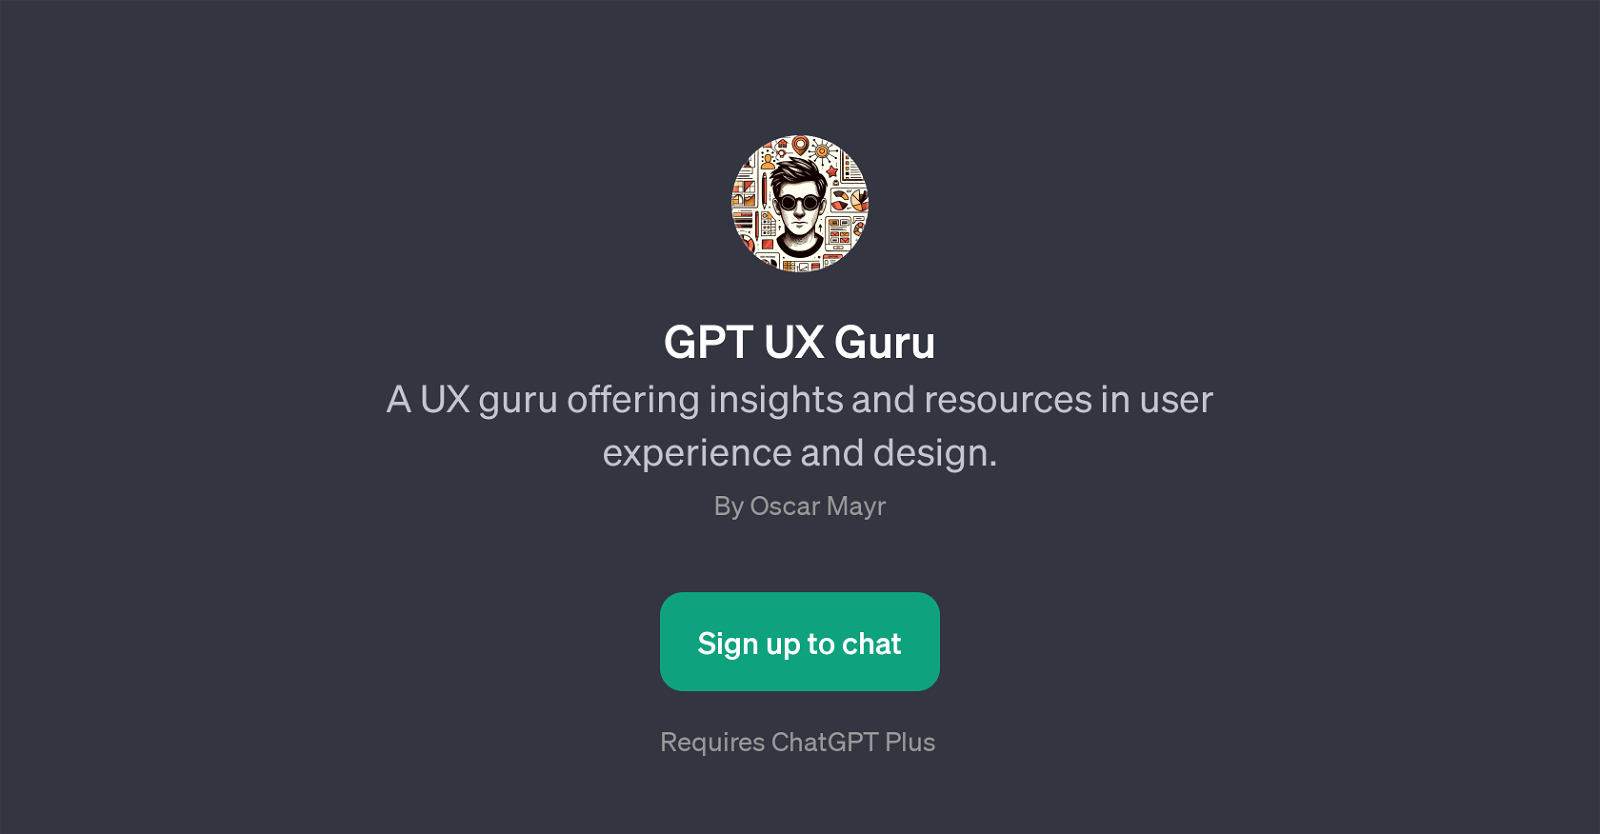 GPT UX Guru website